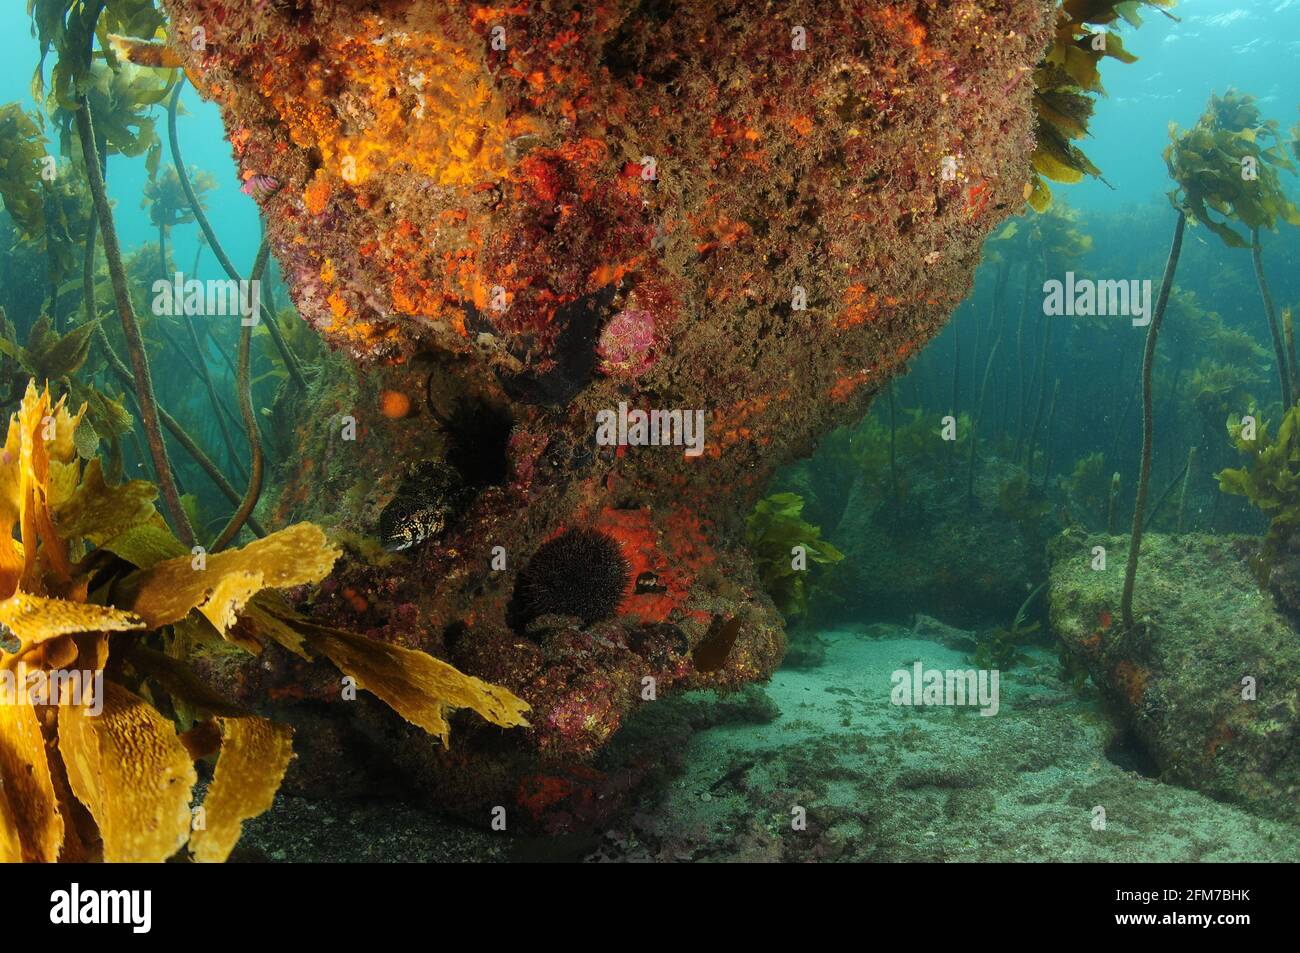 Gran roca con saliente sombreado cubierta de invertebrados coloridos en el fondo del mar con bosque de algas en el fondo. Foto de stock